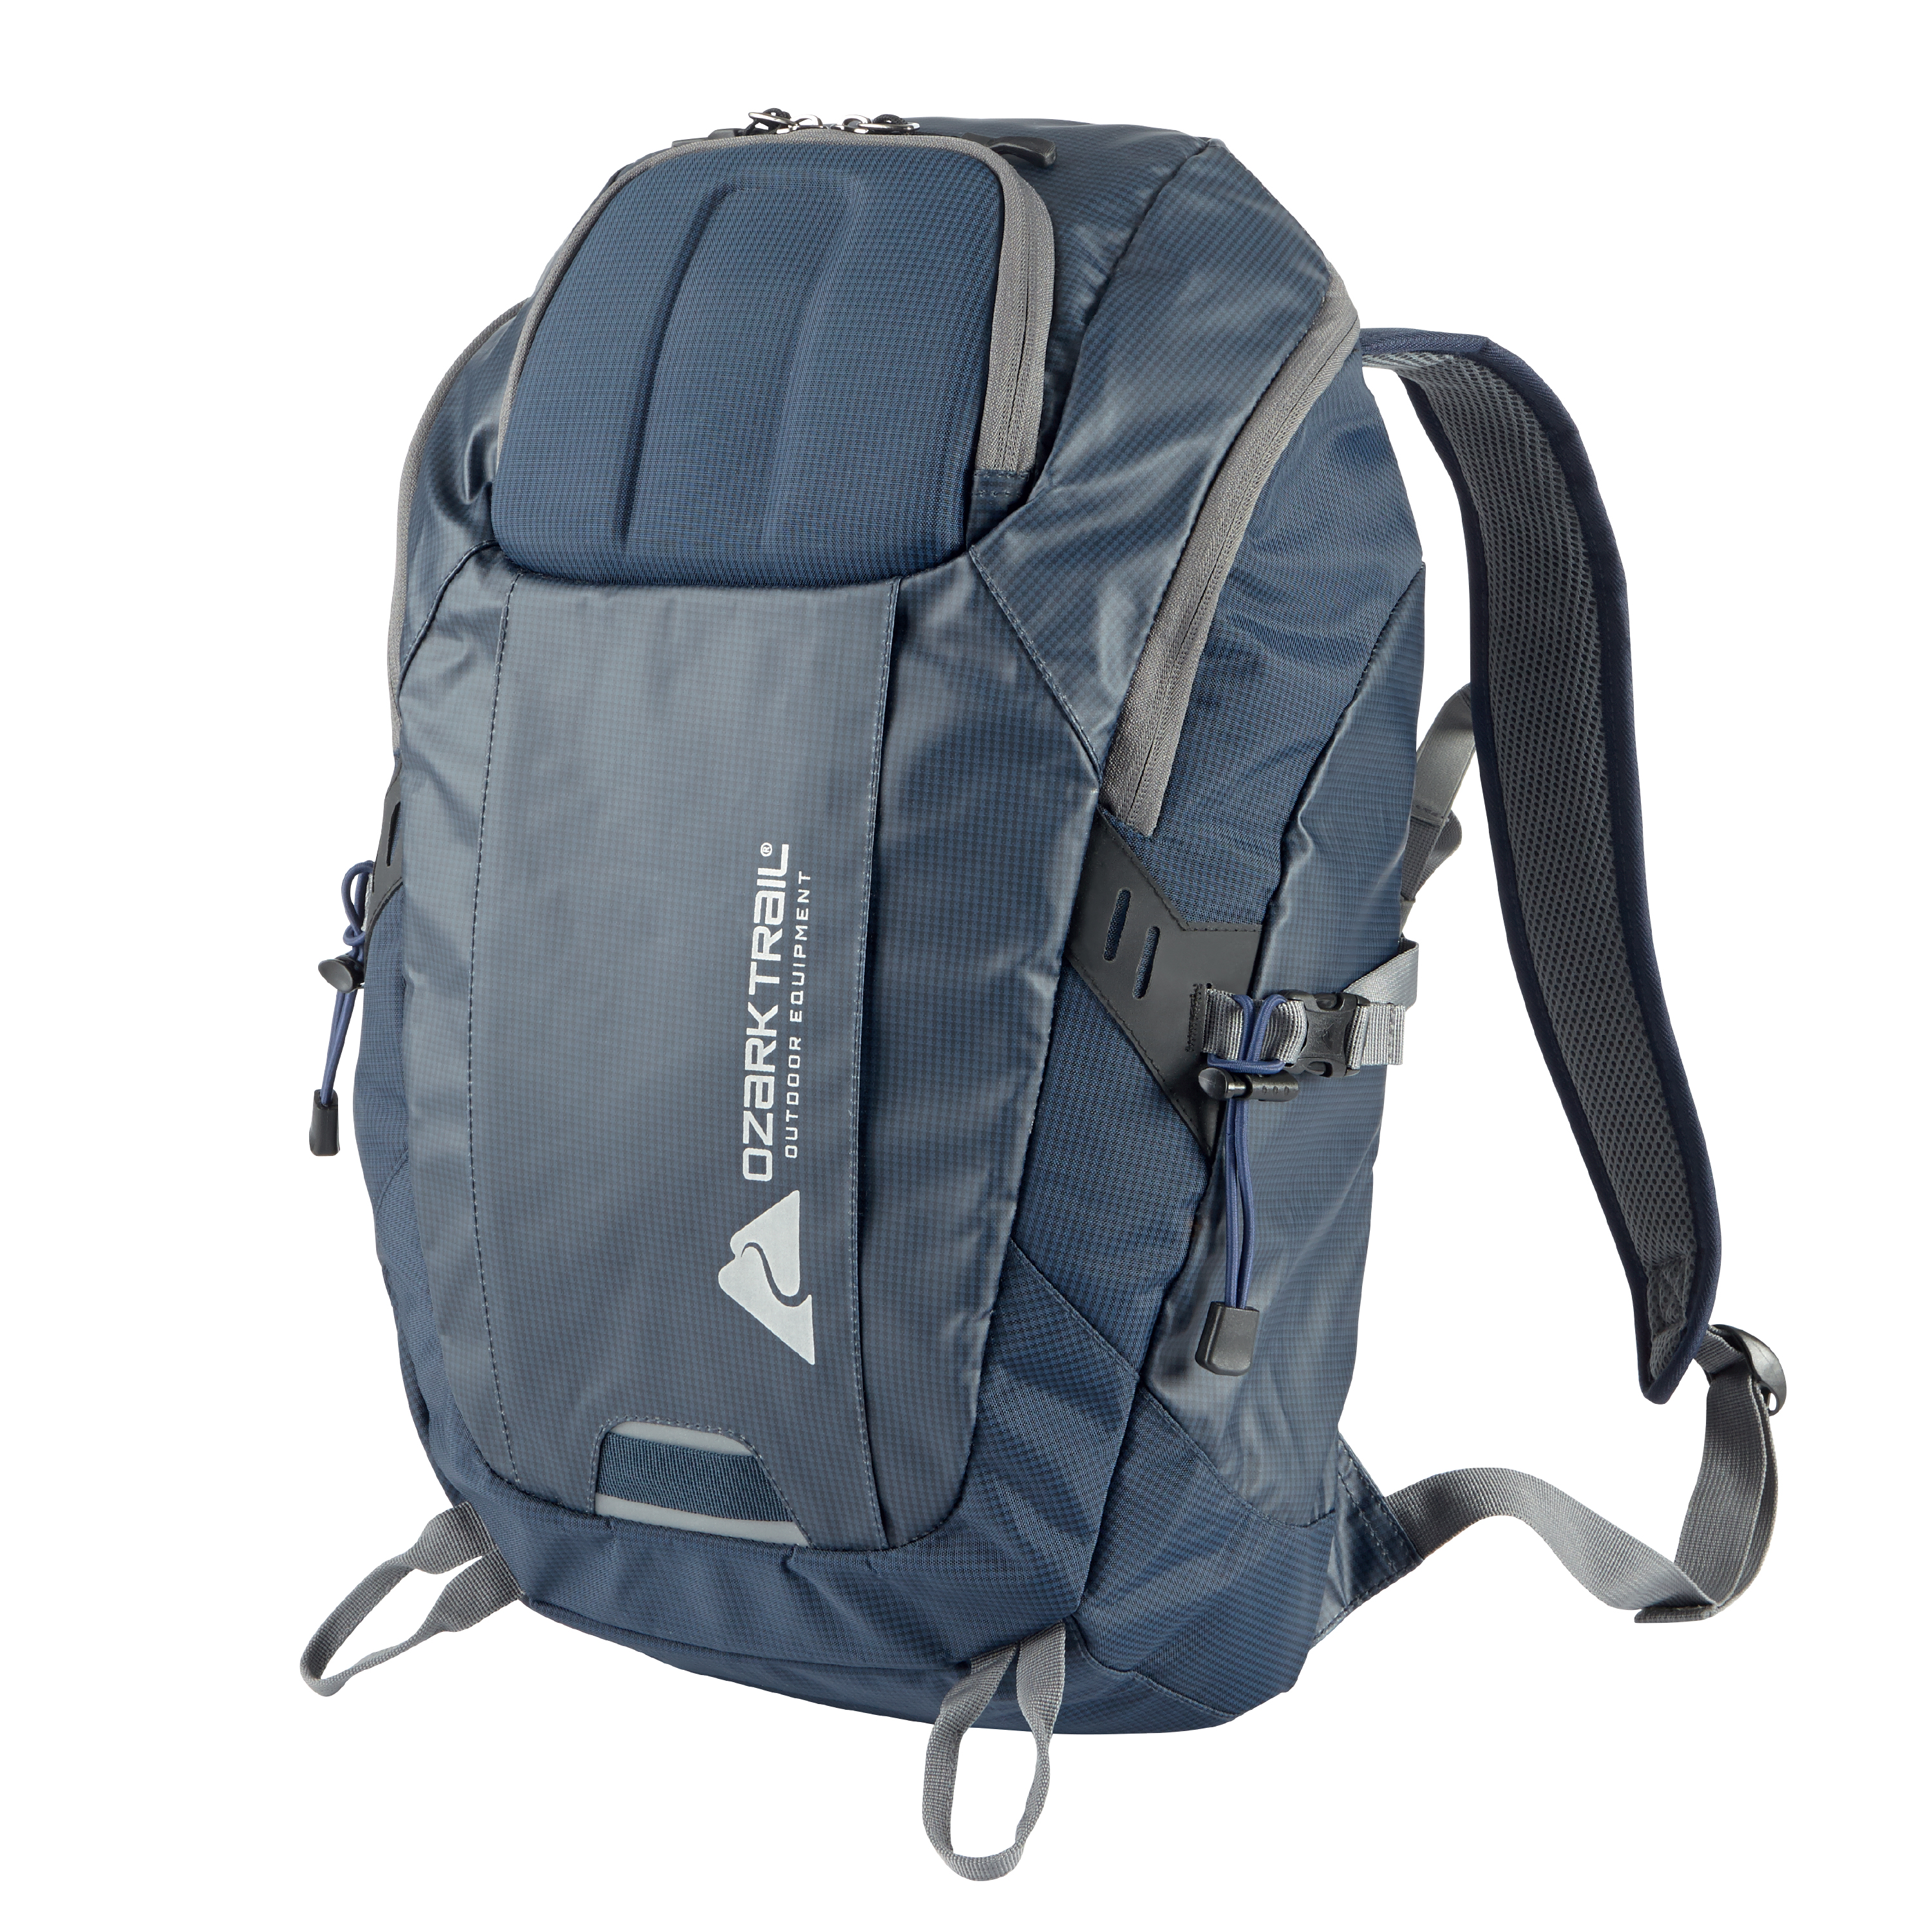 Ozark Trail 35L Silverthorne backpack for $13